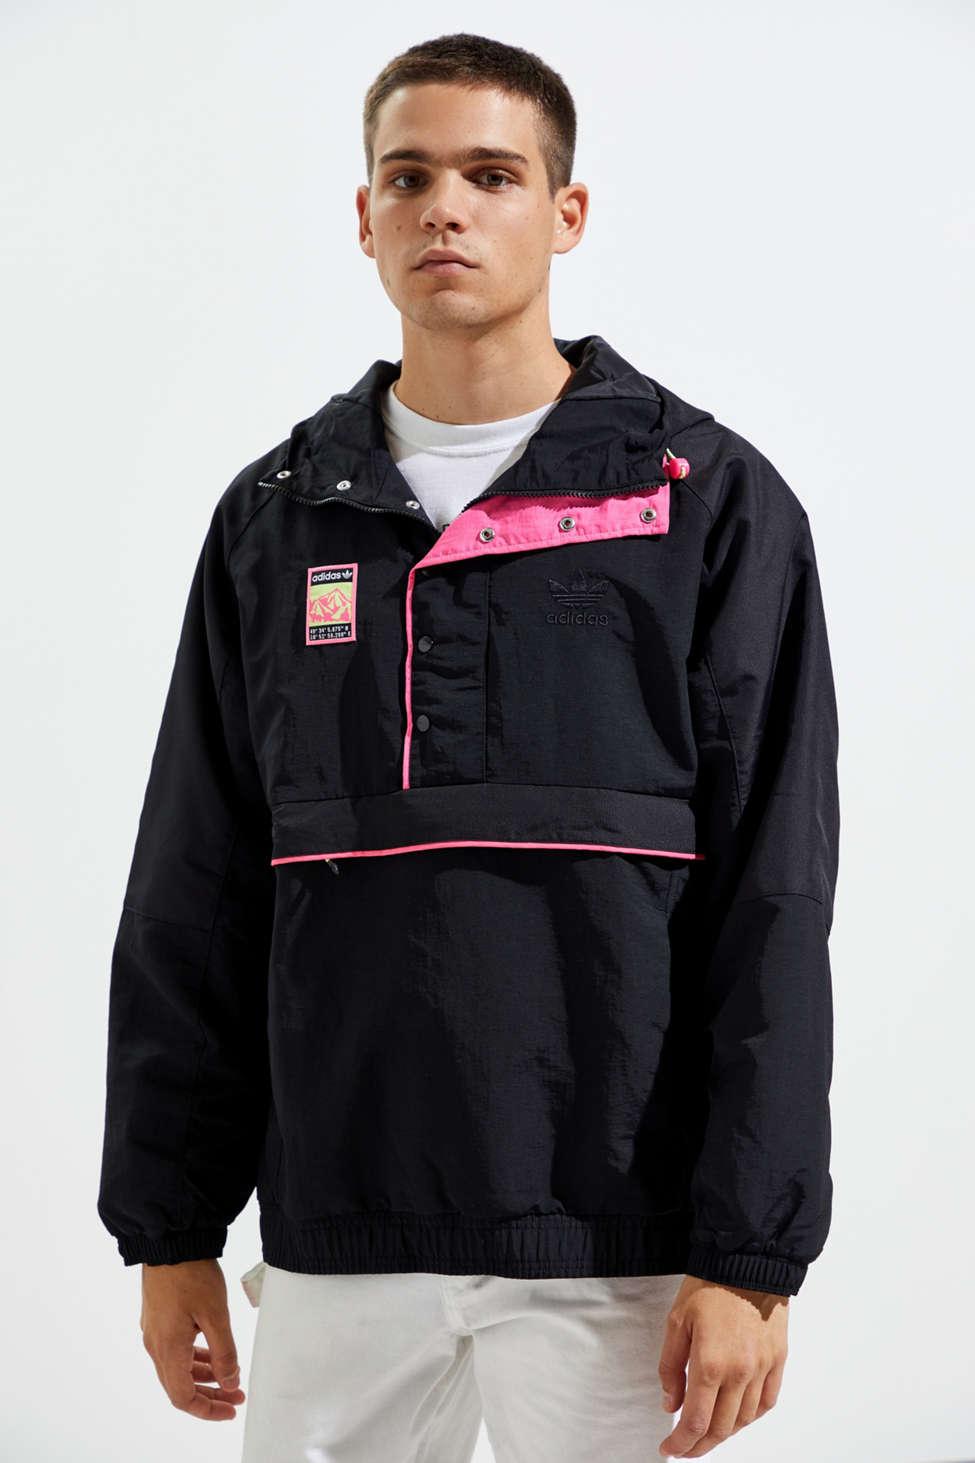 xbyo track jacket